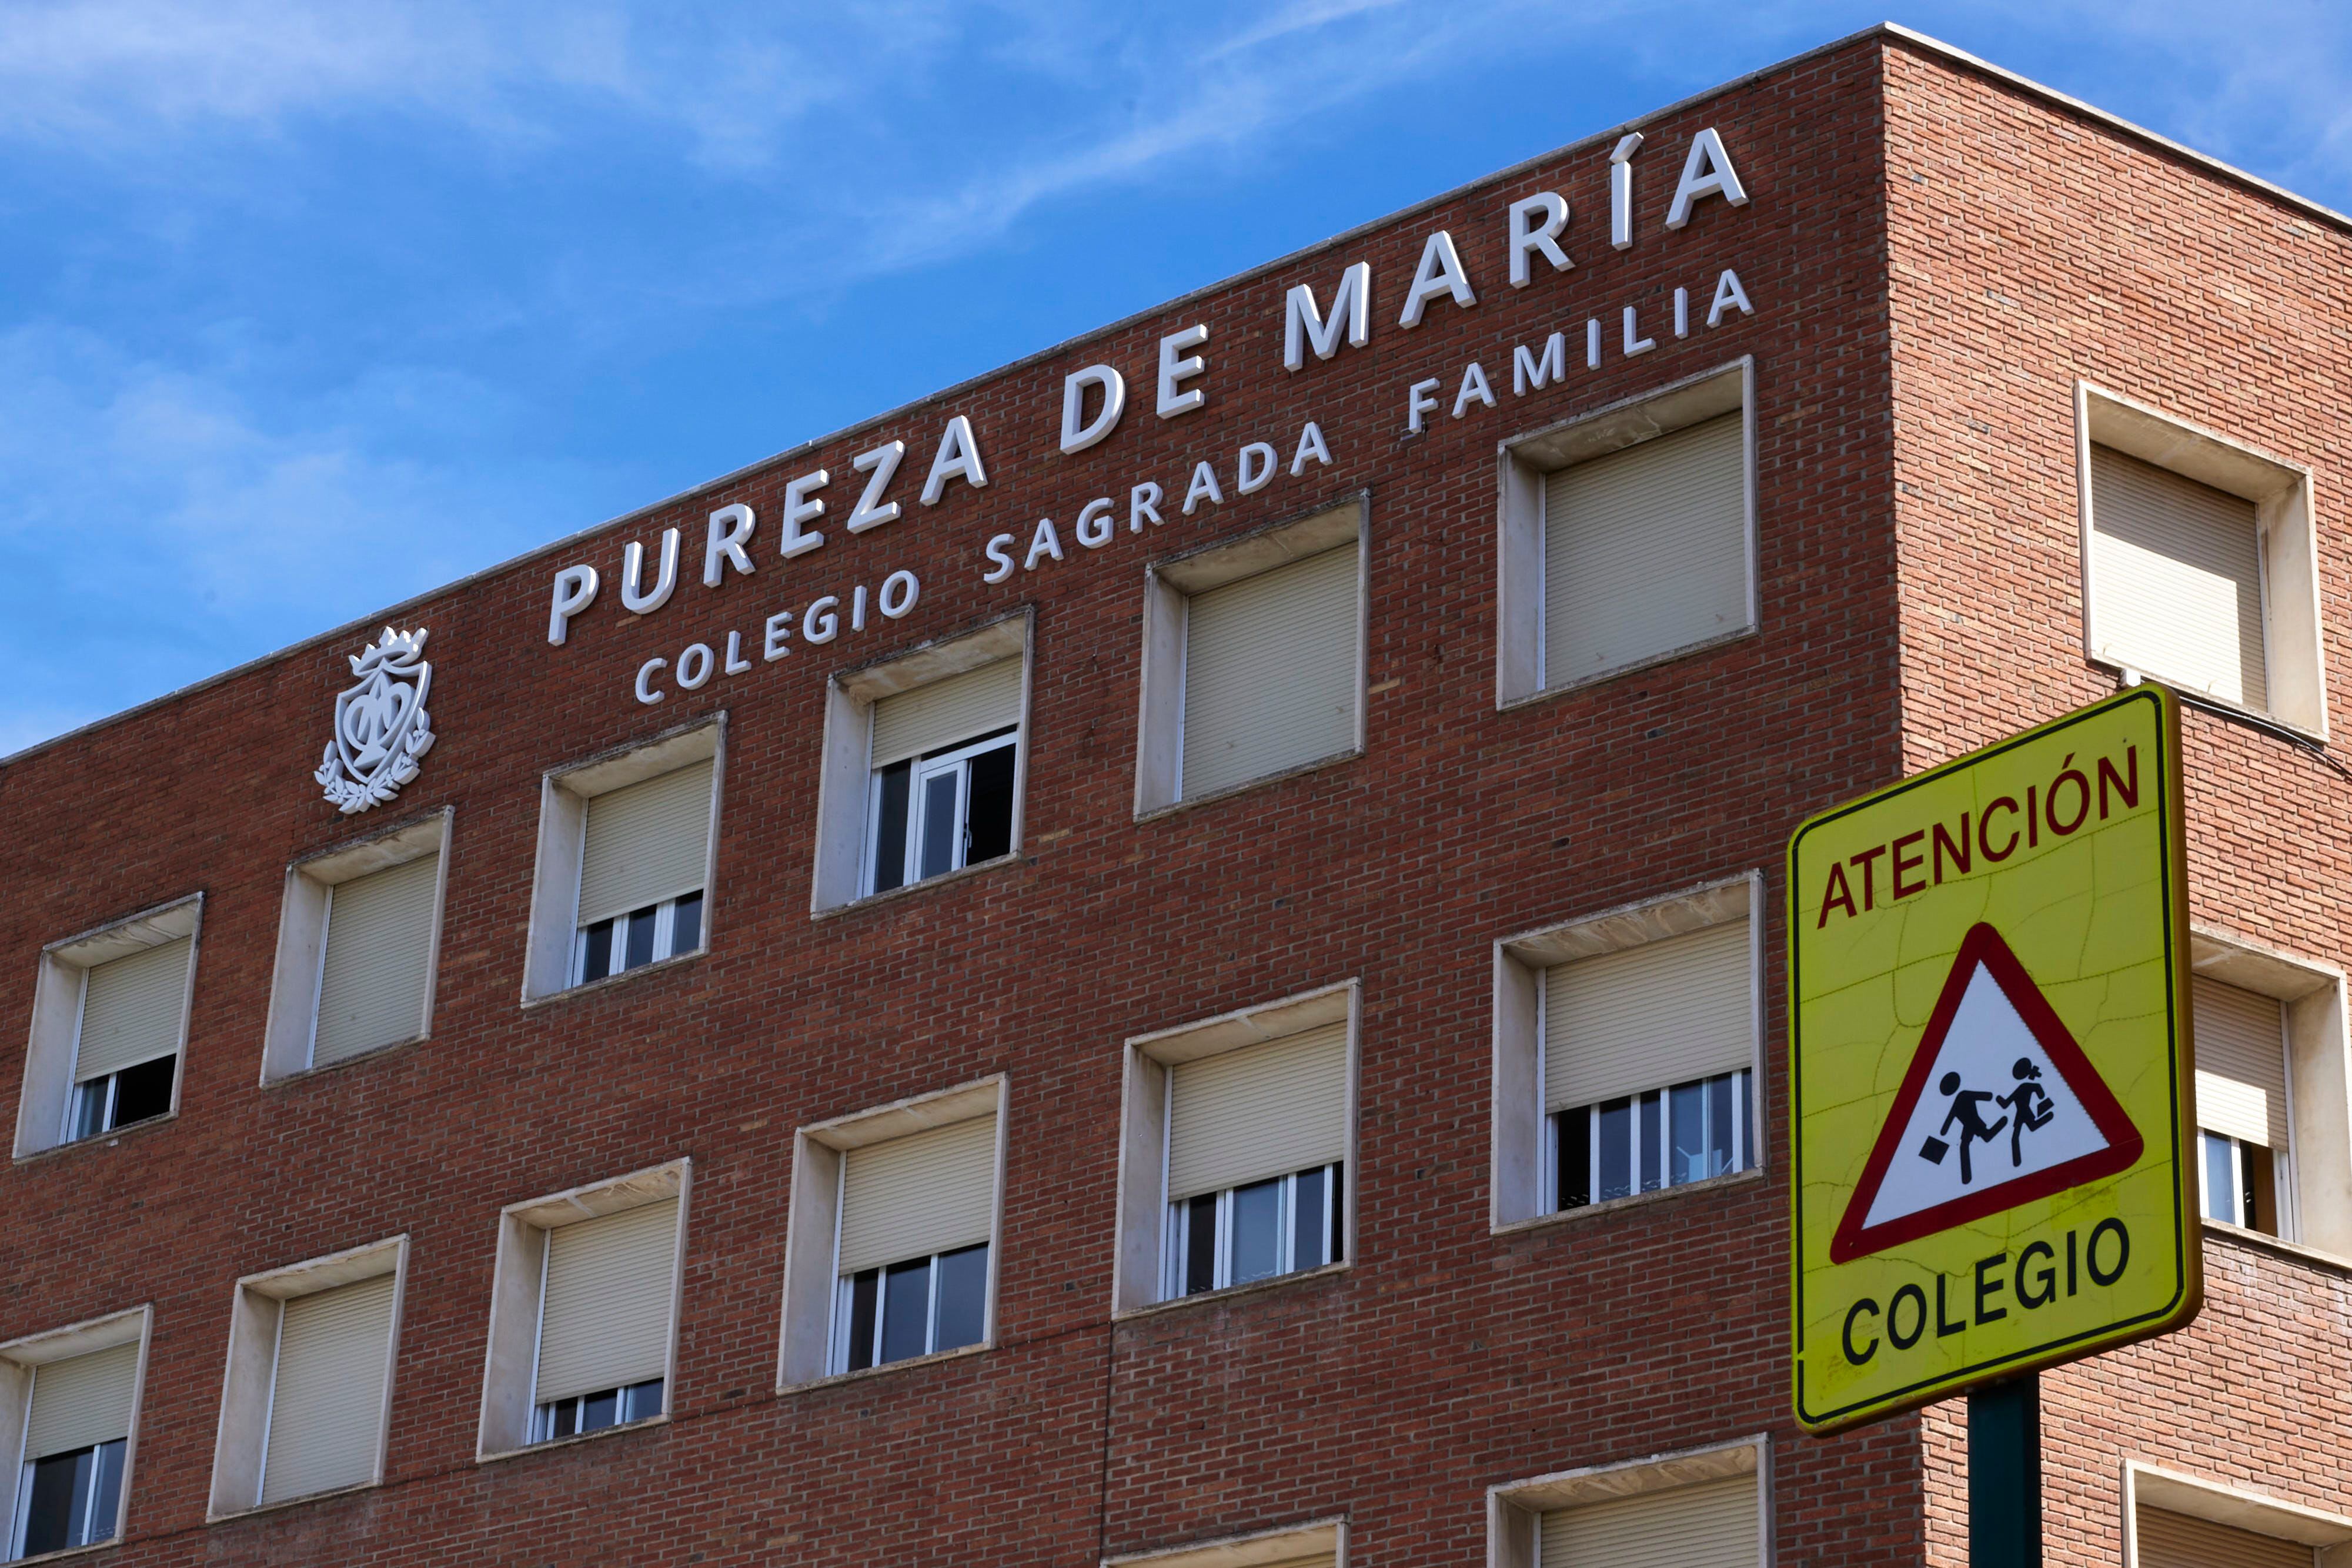 El colegio religioso concertado Sagrada Familia-Pureza de María, ubicado en Granada.